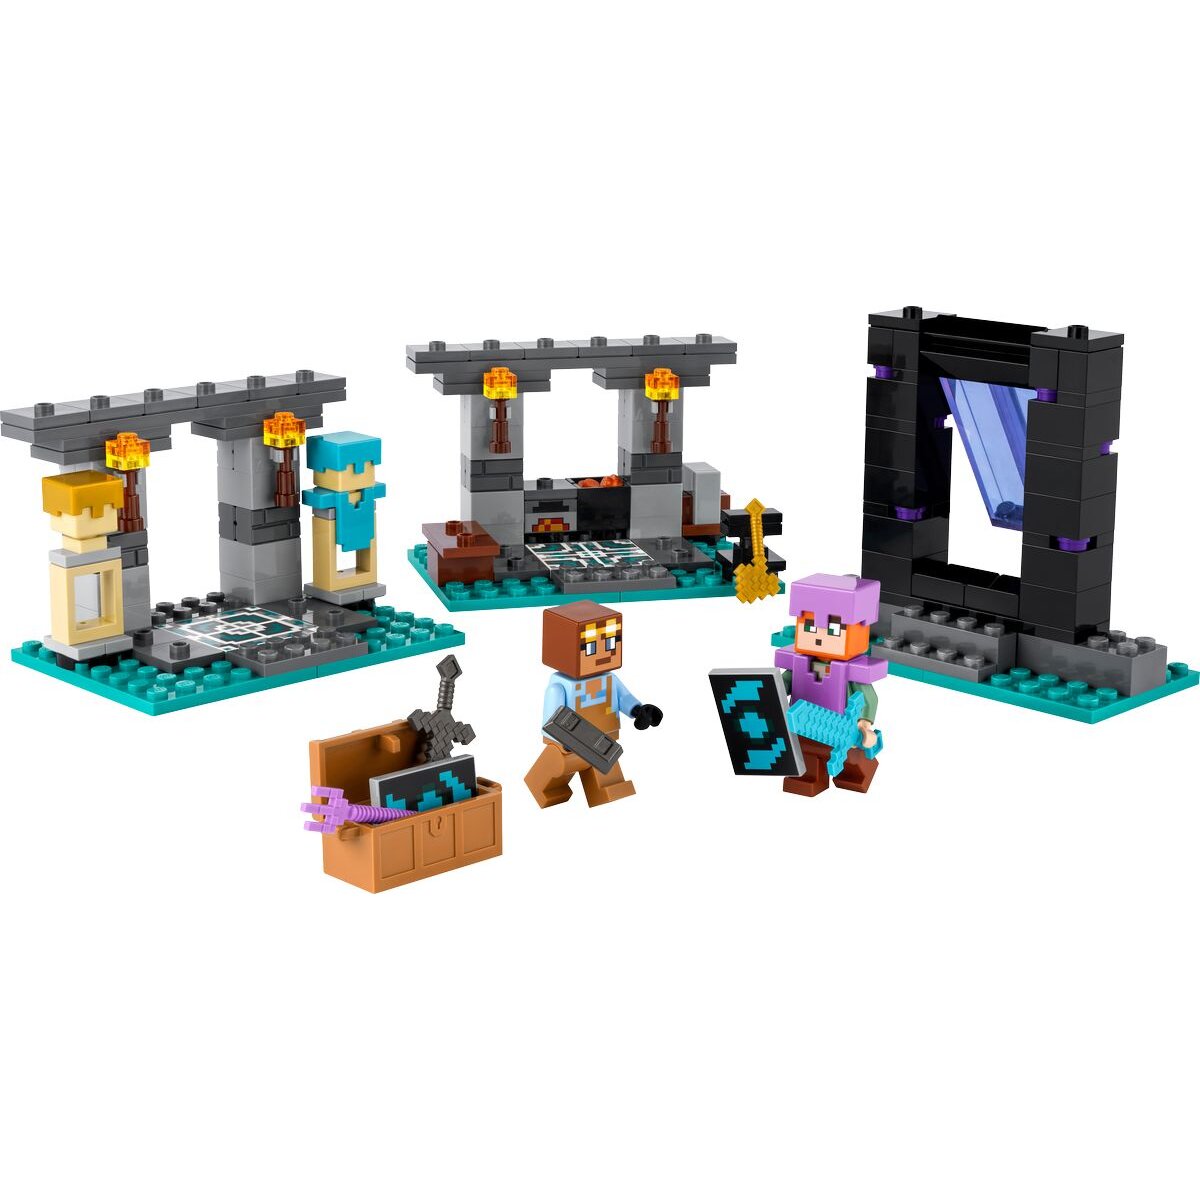 LEGO® Minecraft™ 21252 Die Waffenkammer, Set mit Spielzeug-Waffen und Figur